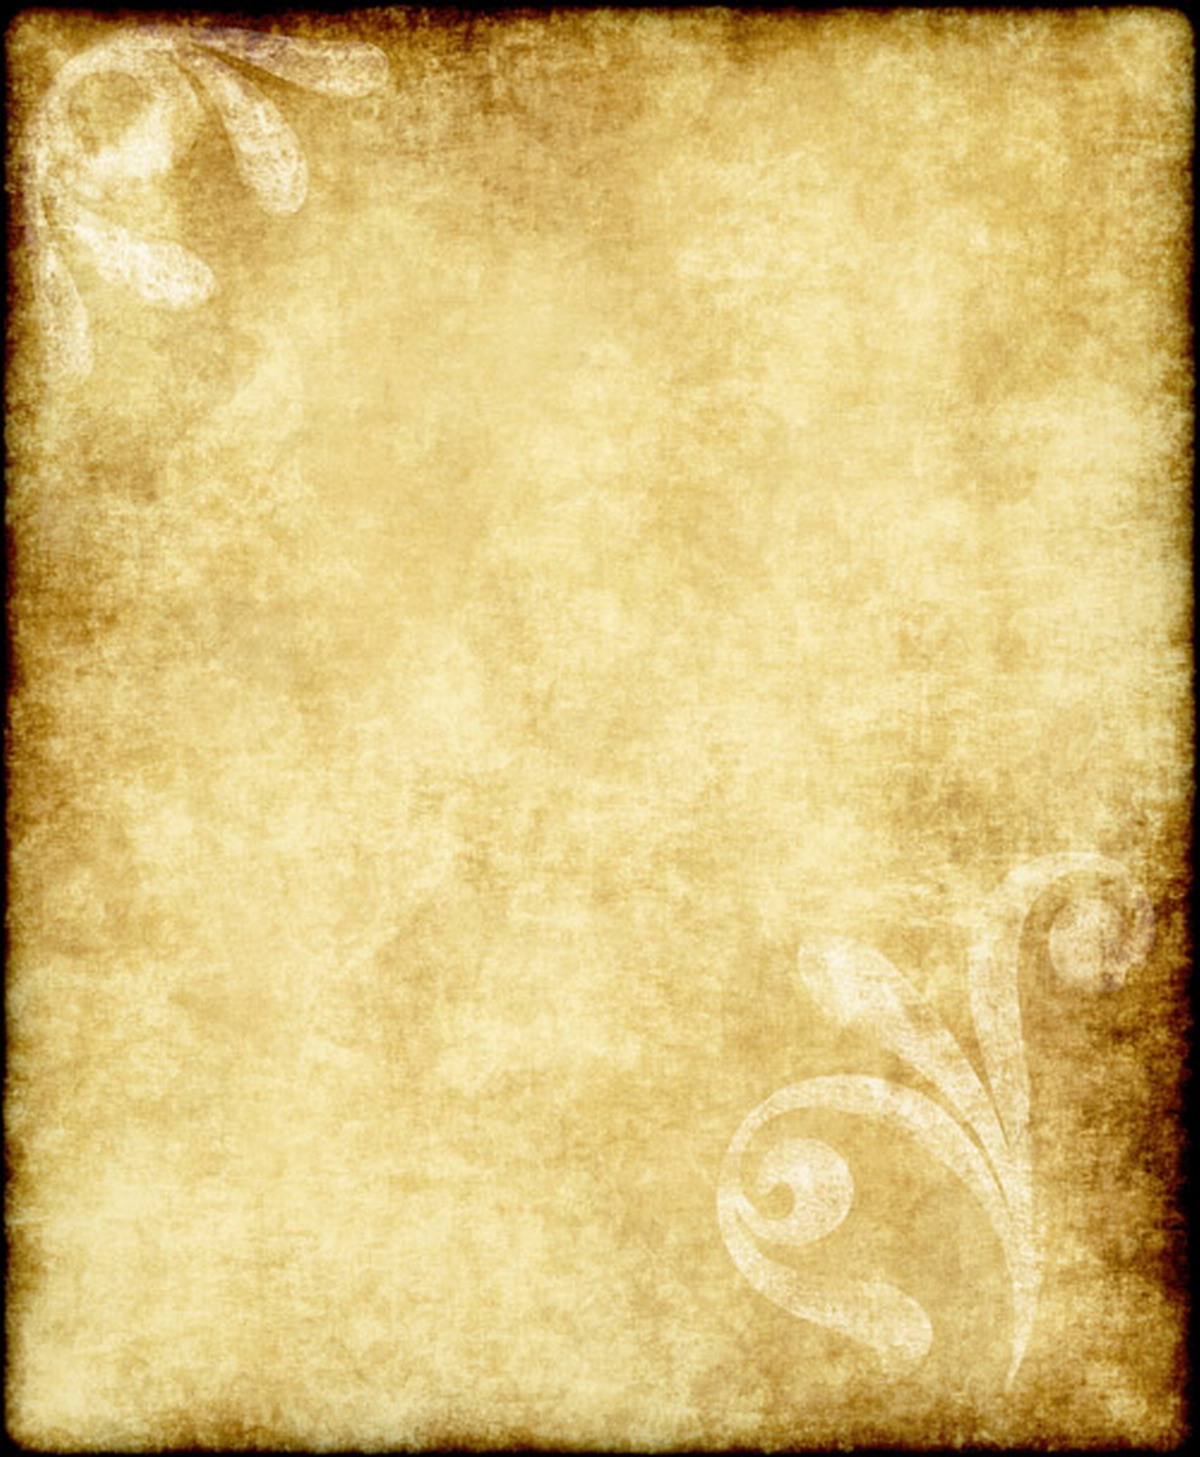 Parchment Clipart